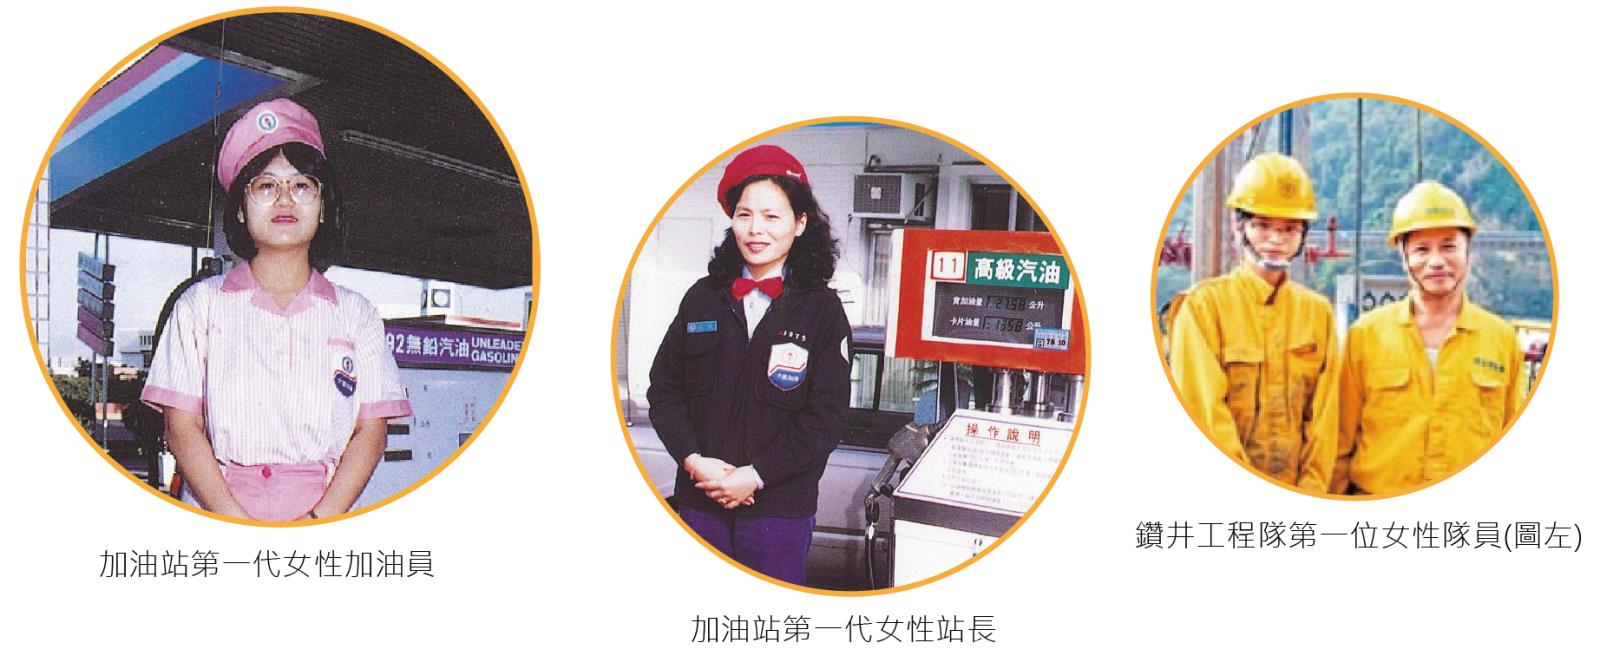 加油站第一代女性加油員、加油站第一代女性站長、鑽井工程隊第一位女性隊員